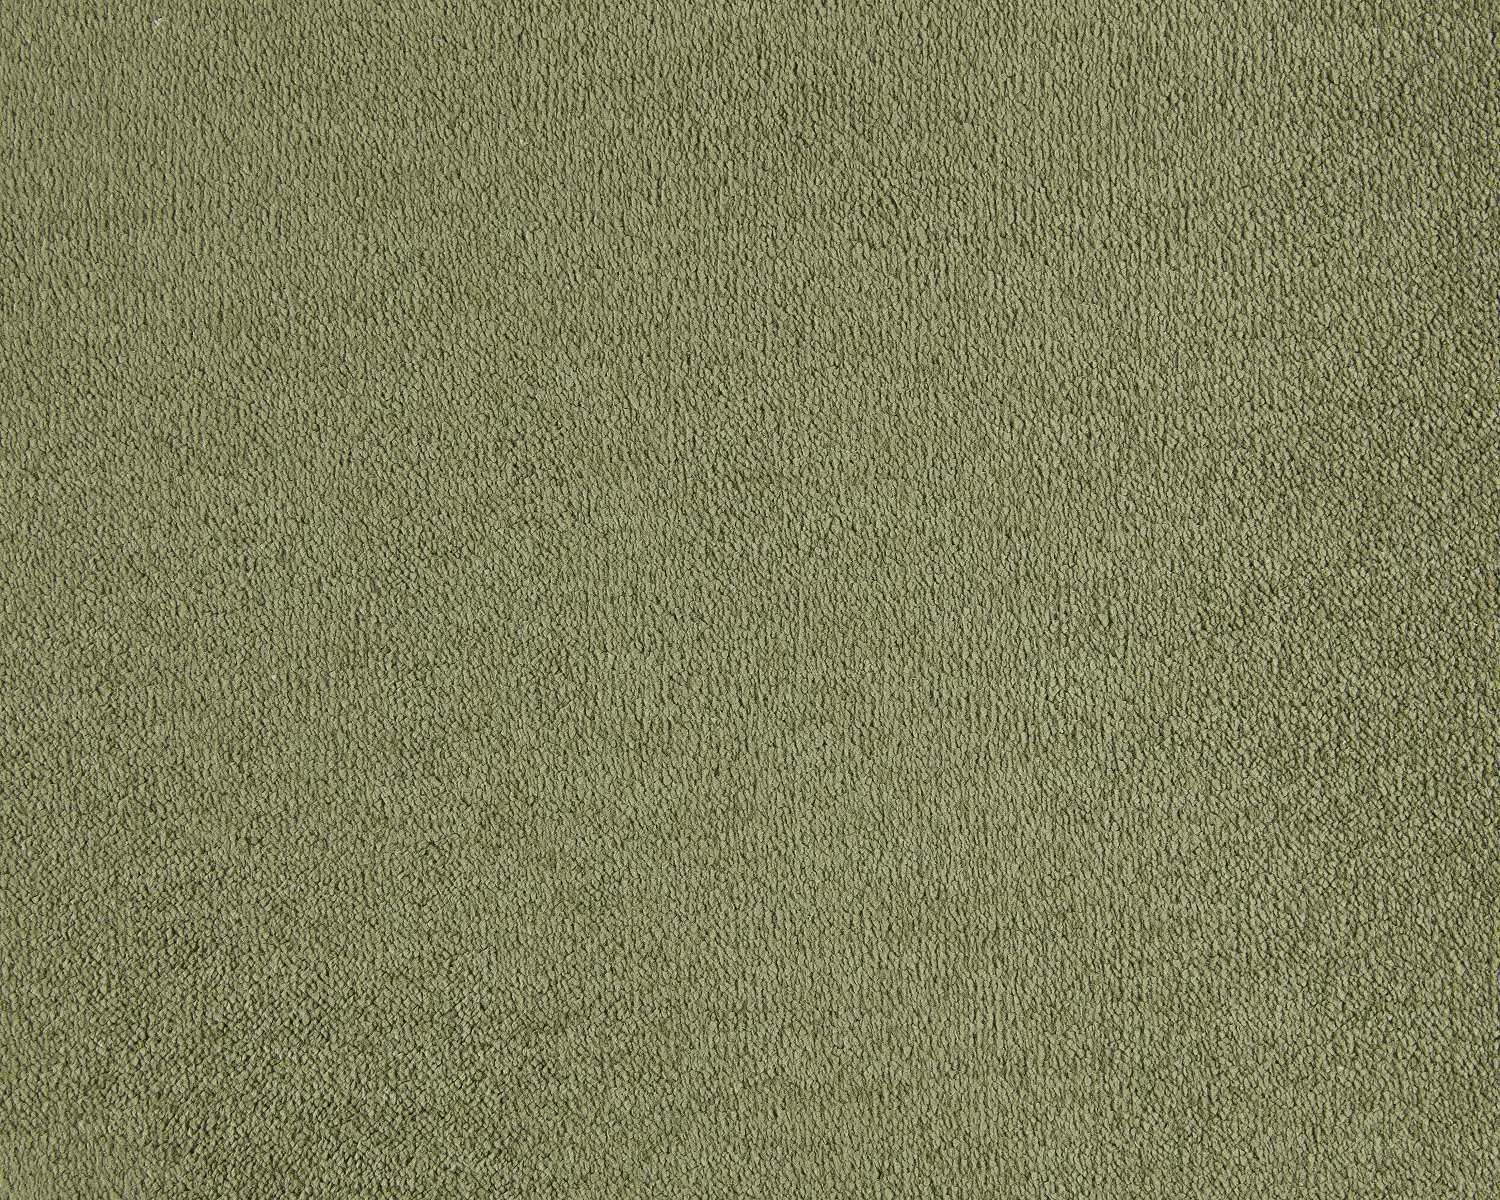 Lior 480 Barley carpet by SmartStrand